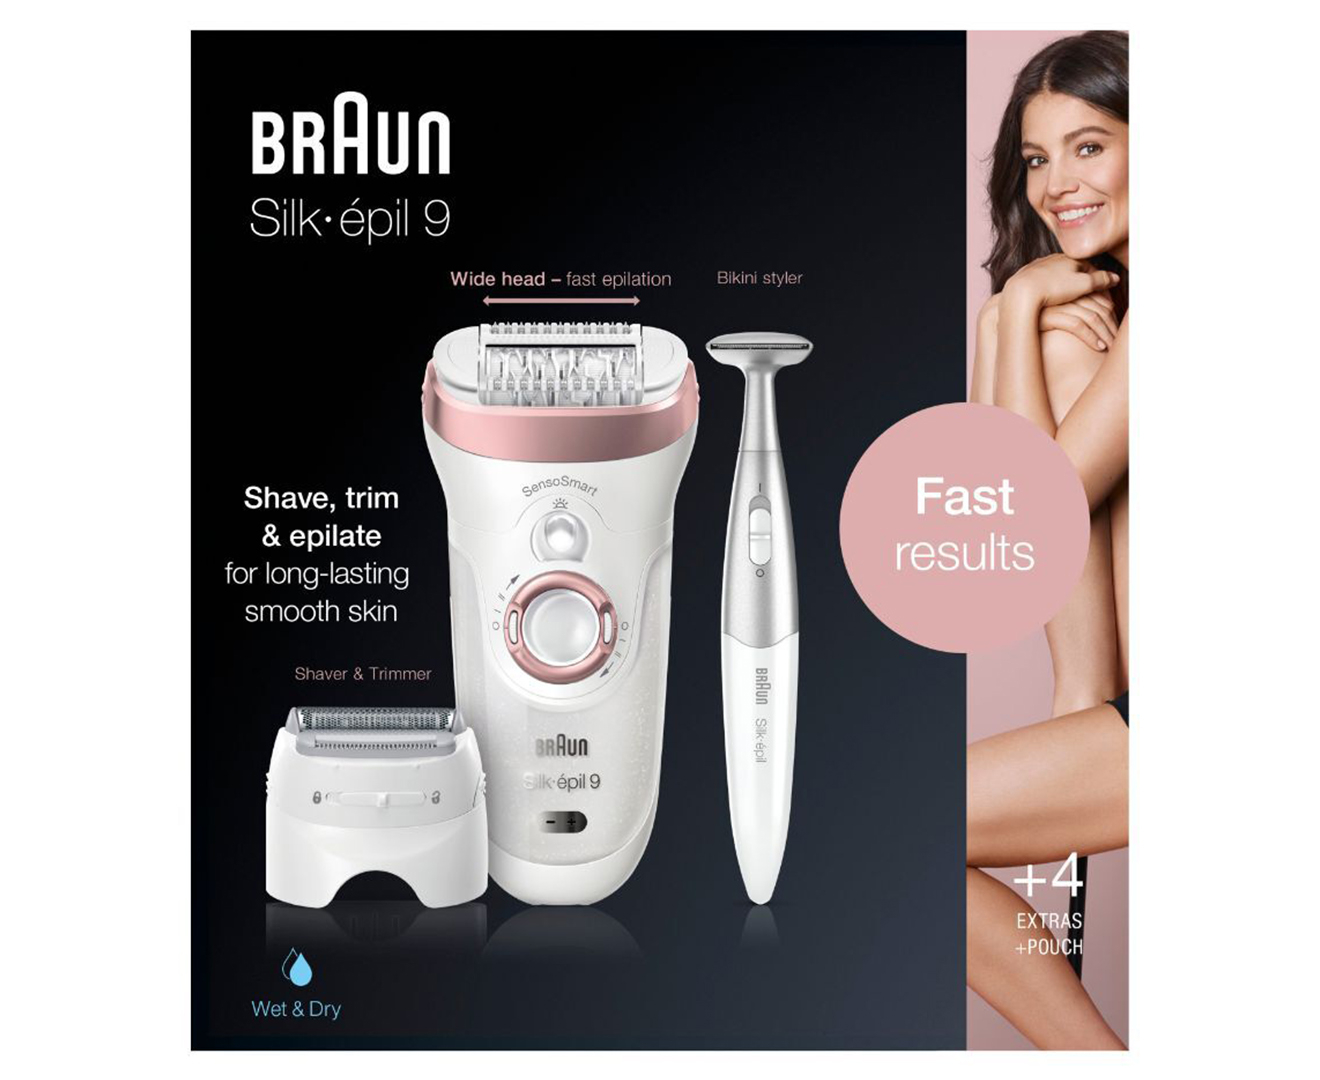 Braun Silk-épil 9-985 Epilator Beauty Set for Women